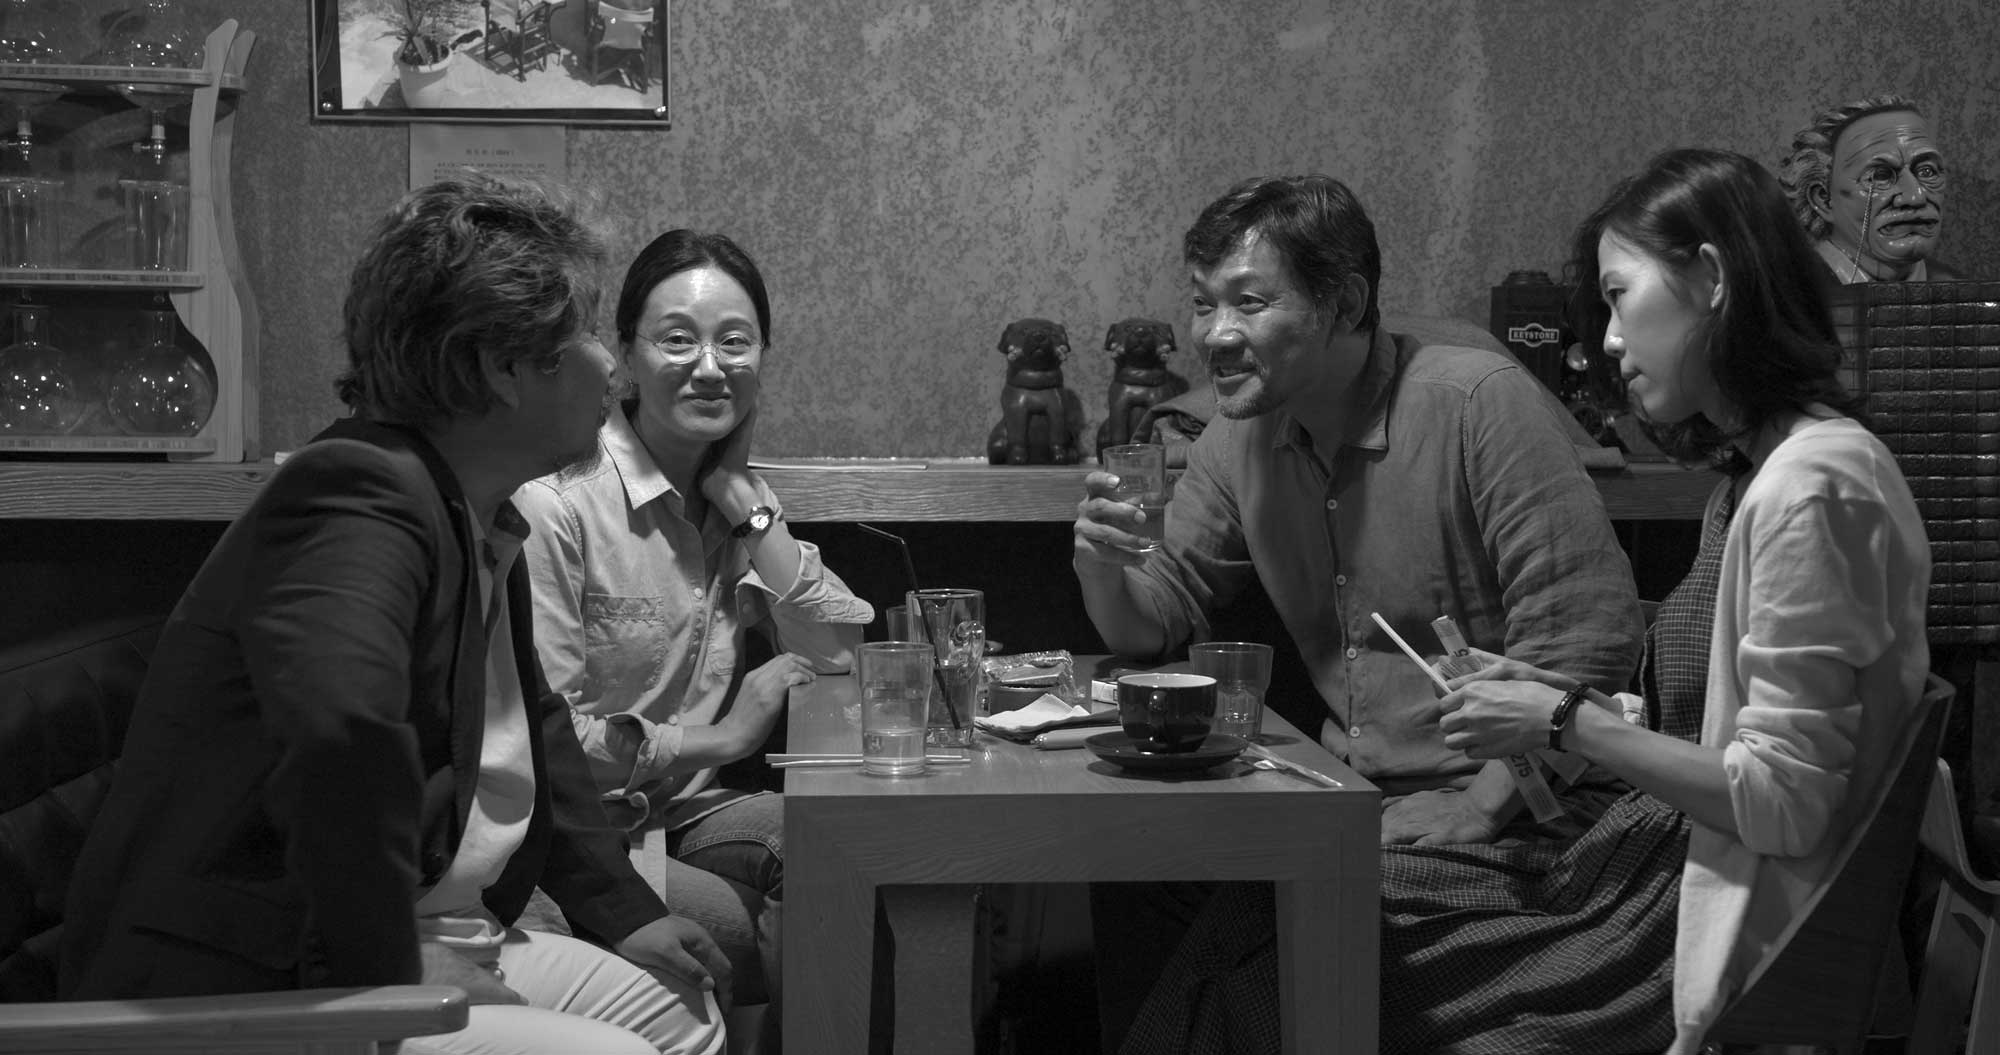 第 42 屆香港國際電影節的片單剛剛出爐，又是影迷頭痛的時候，要在兩天之內排好時間表，為下月中馬拉松式睇戲作好準備。今年全新的港產片只有一部，大家可以主力看看其他華語和外語電影了。片目意外地沒有萬眾期待的 Michael Haneke《Happy End》（不過據知已有發行商購入），其餘作品大家又有甚麼心水？大明星主演、大導演執導的作品，大家肯定不會錯過，就不再另文介紹了，以下是編輯部的小小推薦名單，如排時間表時發現仍有大量「空隙」，不妨加多兩部，一年就這麼瘋狂一次，狂看戲是很青春的事啊！